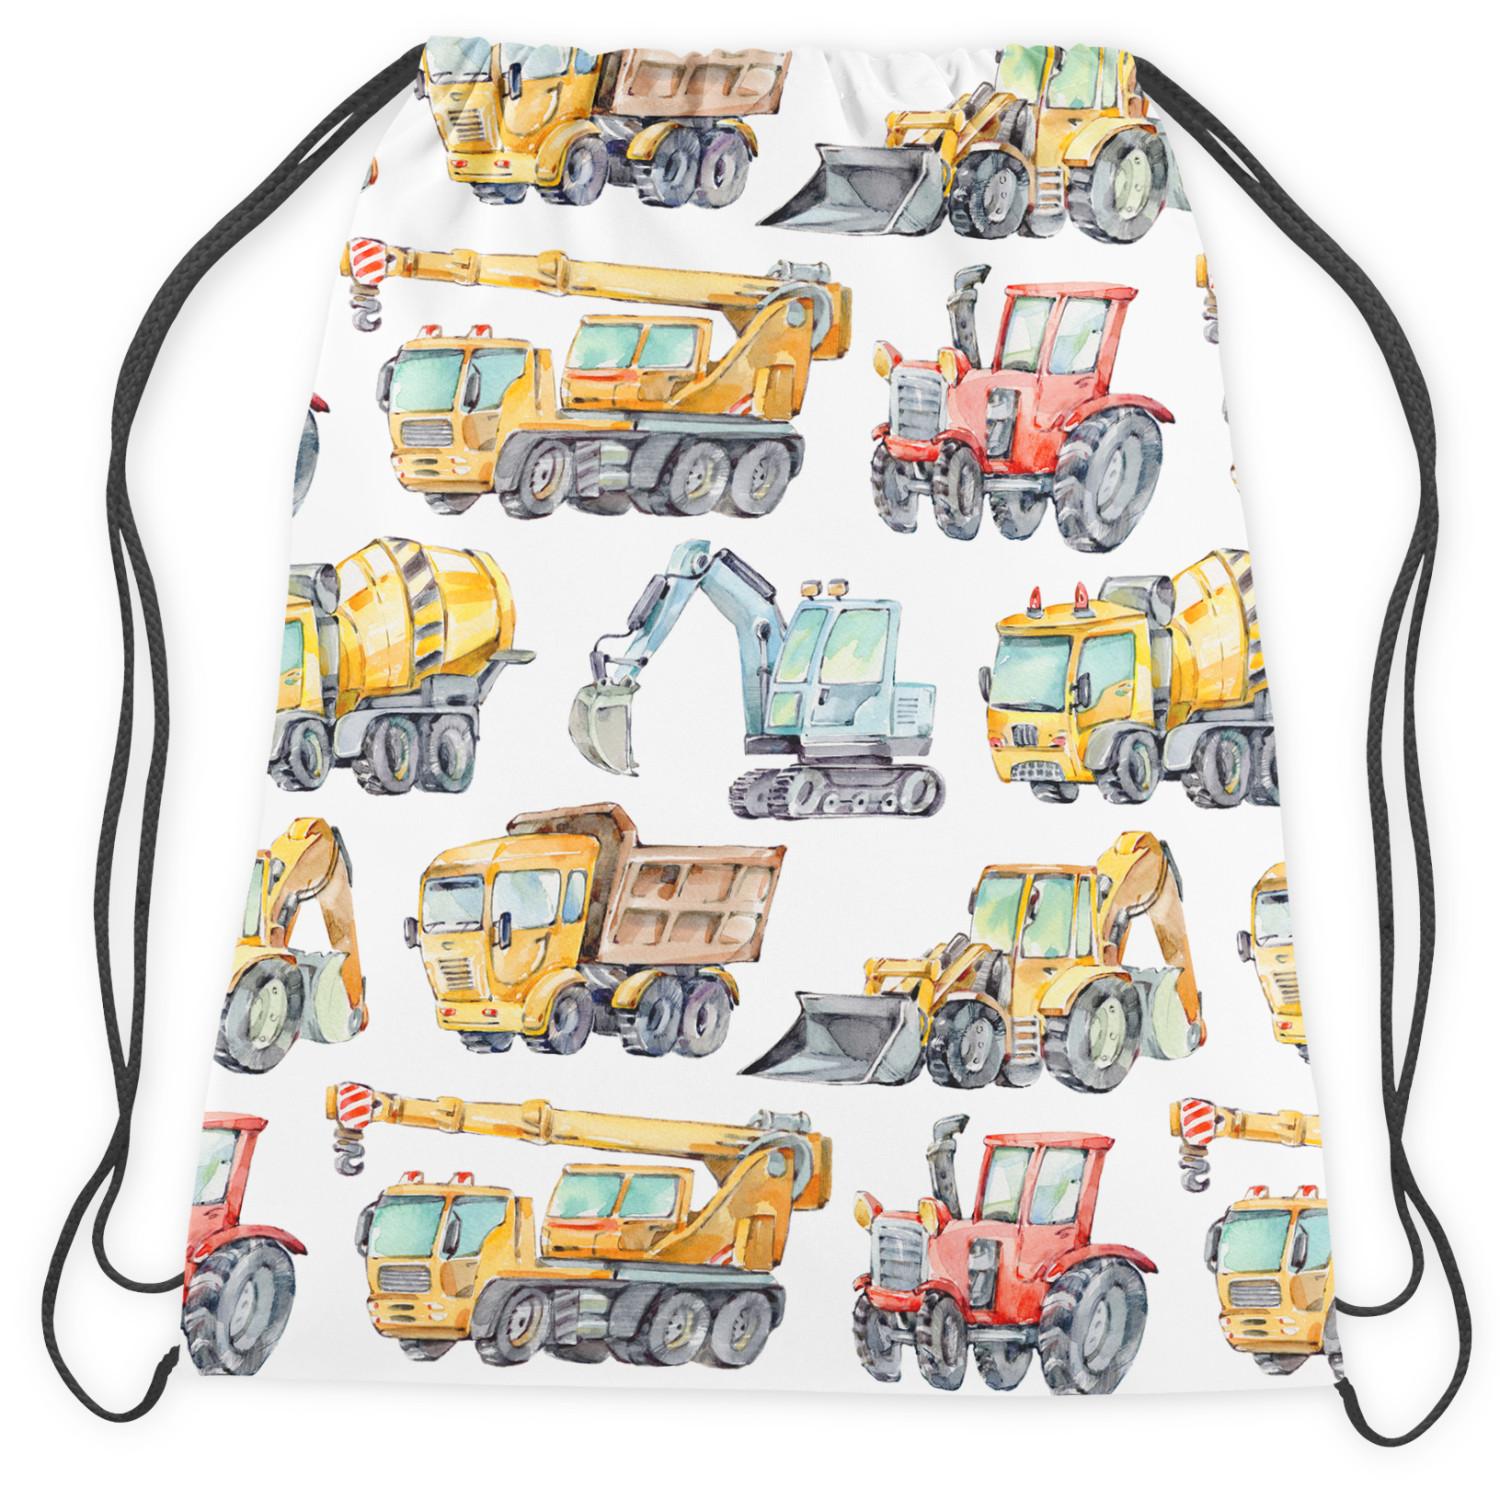 Backpack Construction machinery revue - excavators, tractors, dumpers, cranes